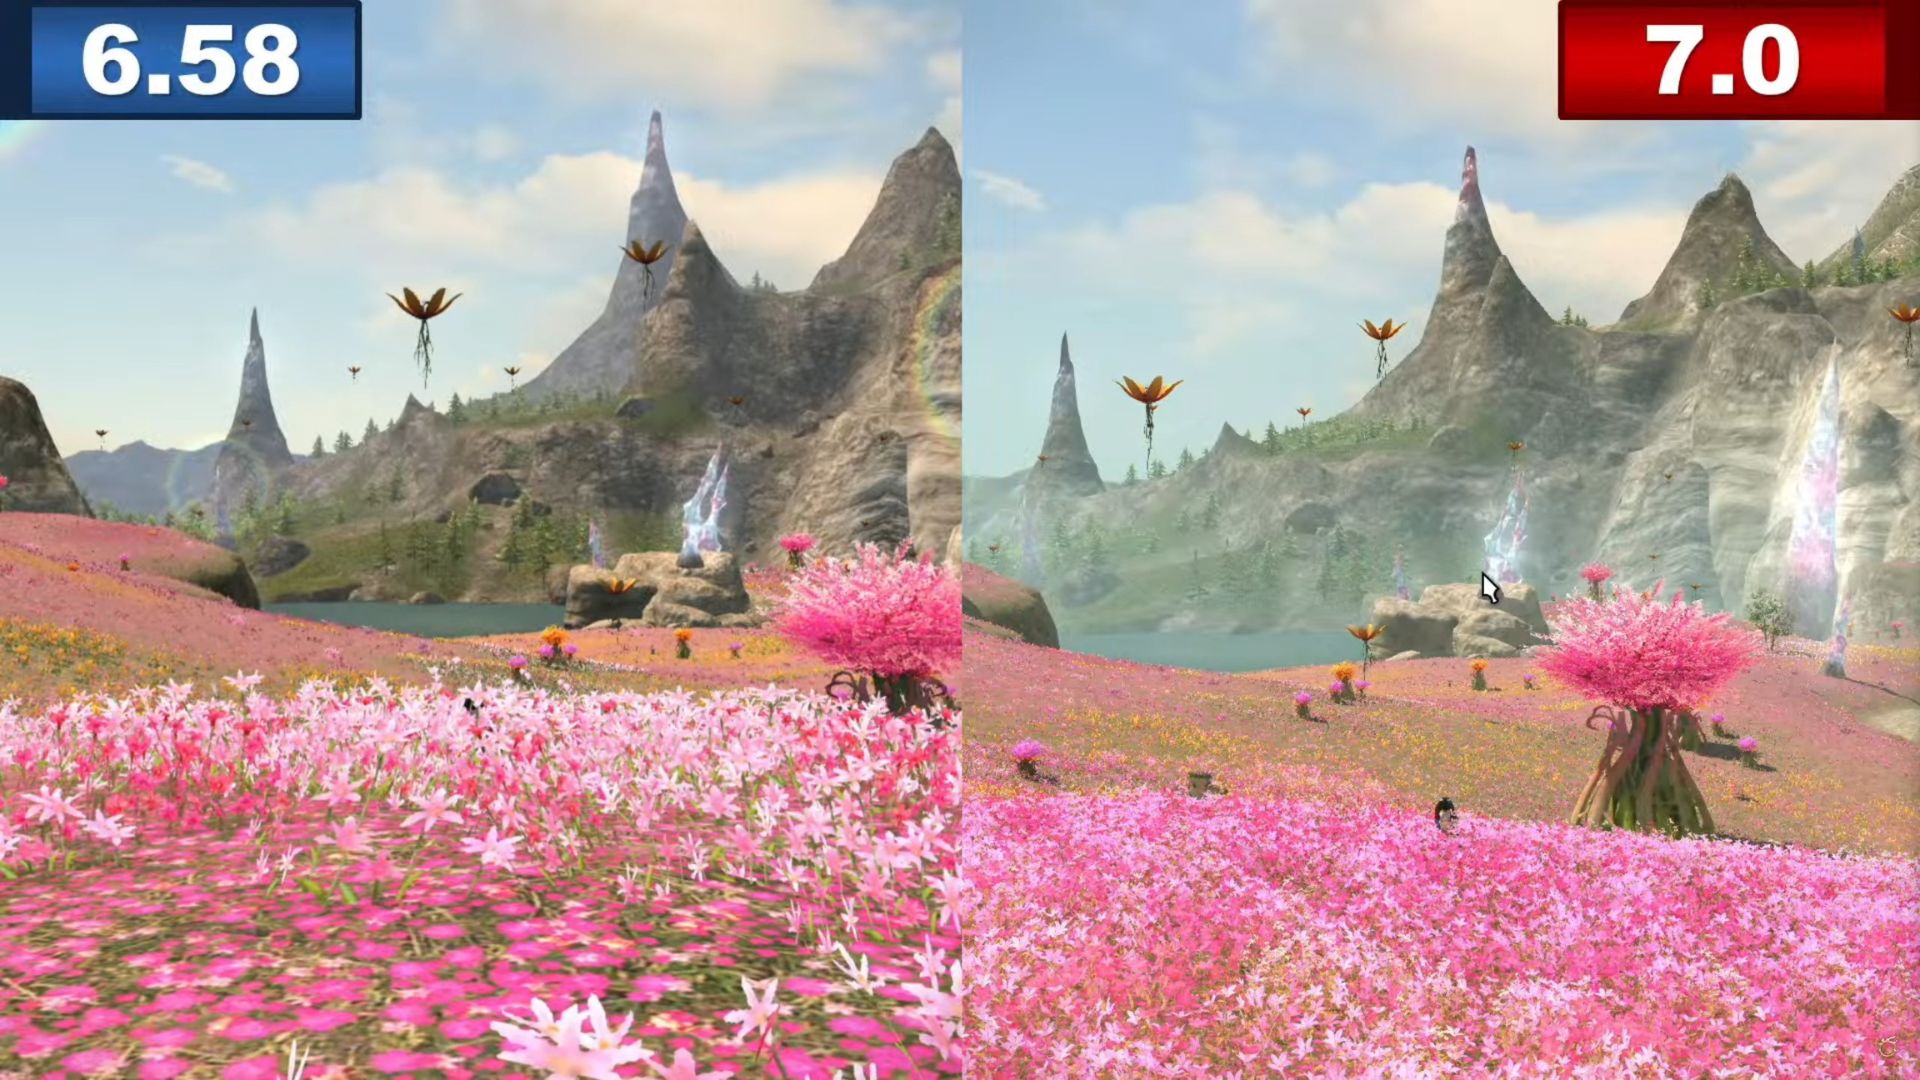 Final Fantasy 14'ün referans noktası Dawntrail: pembe çiçek tarlalarının iki fotoğrafı, sağdaki soldakinden daha kaliteli